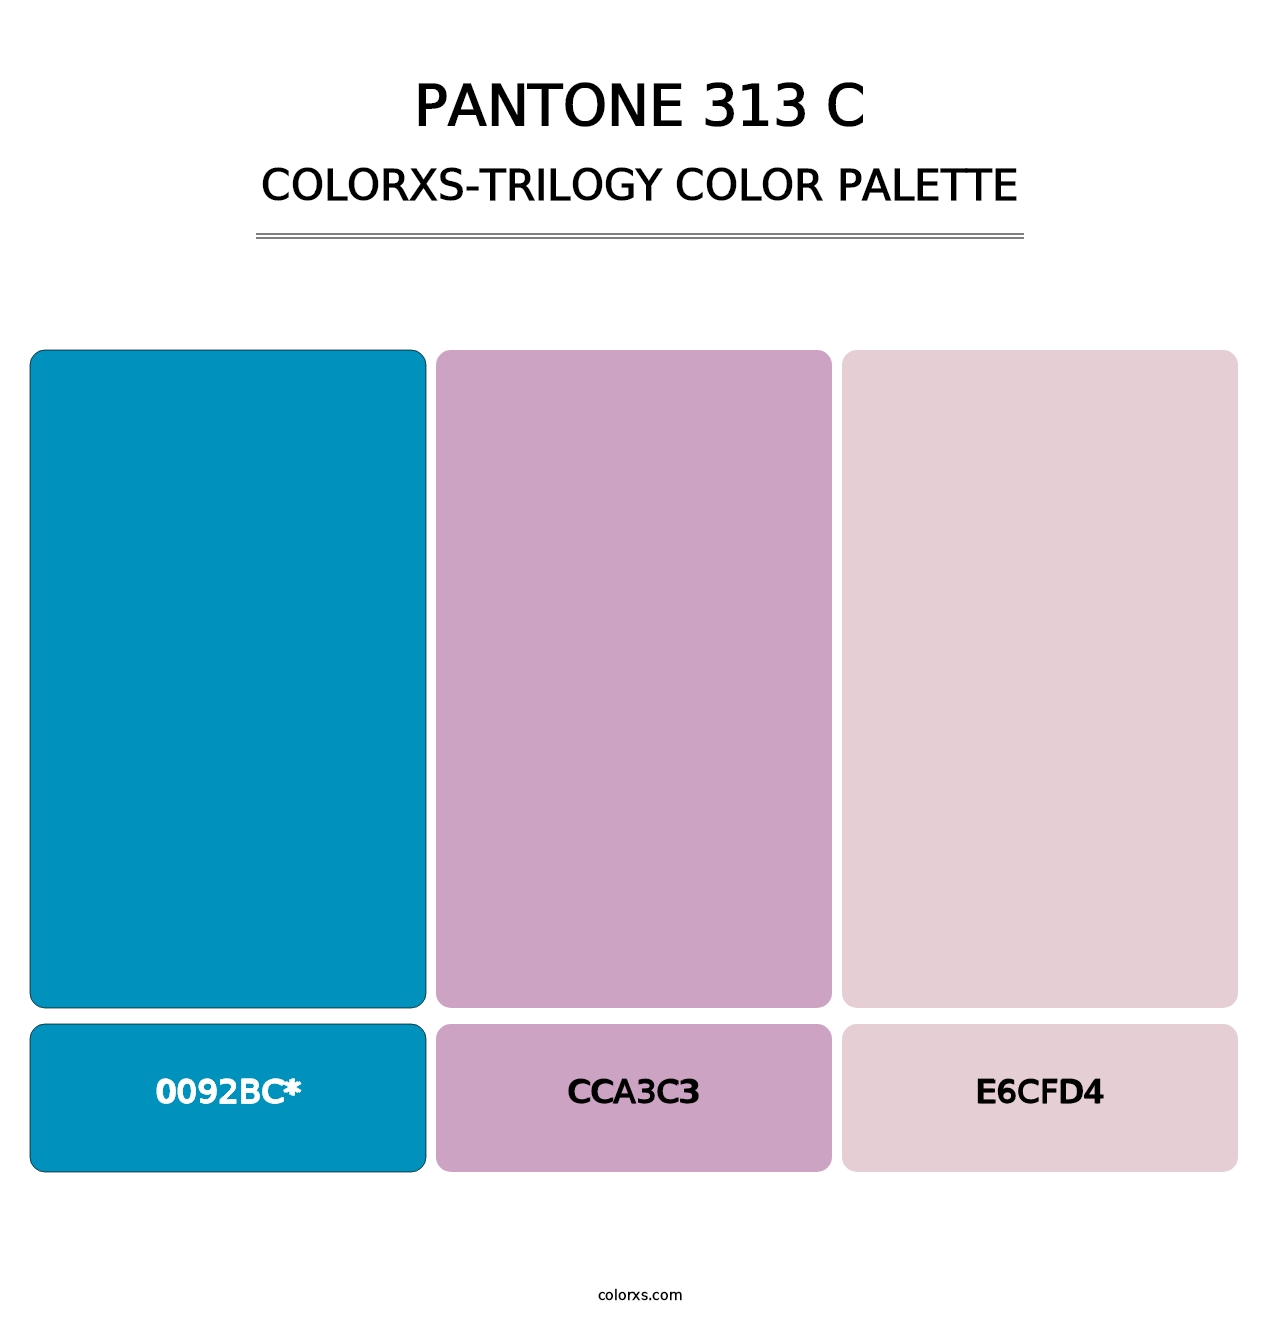 PANTONE 313 C - Colorxs Trilogy Palette